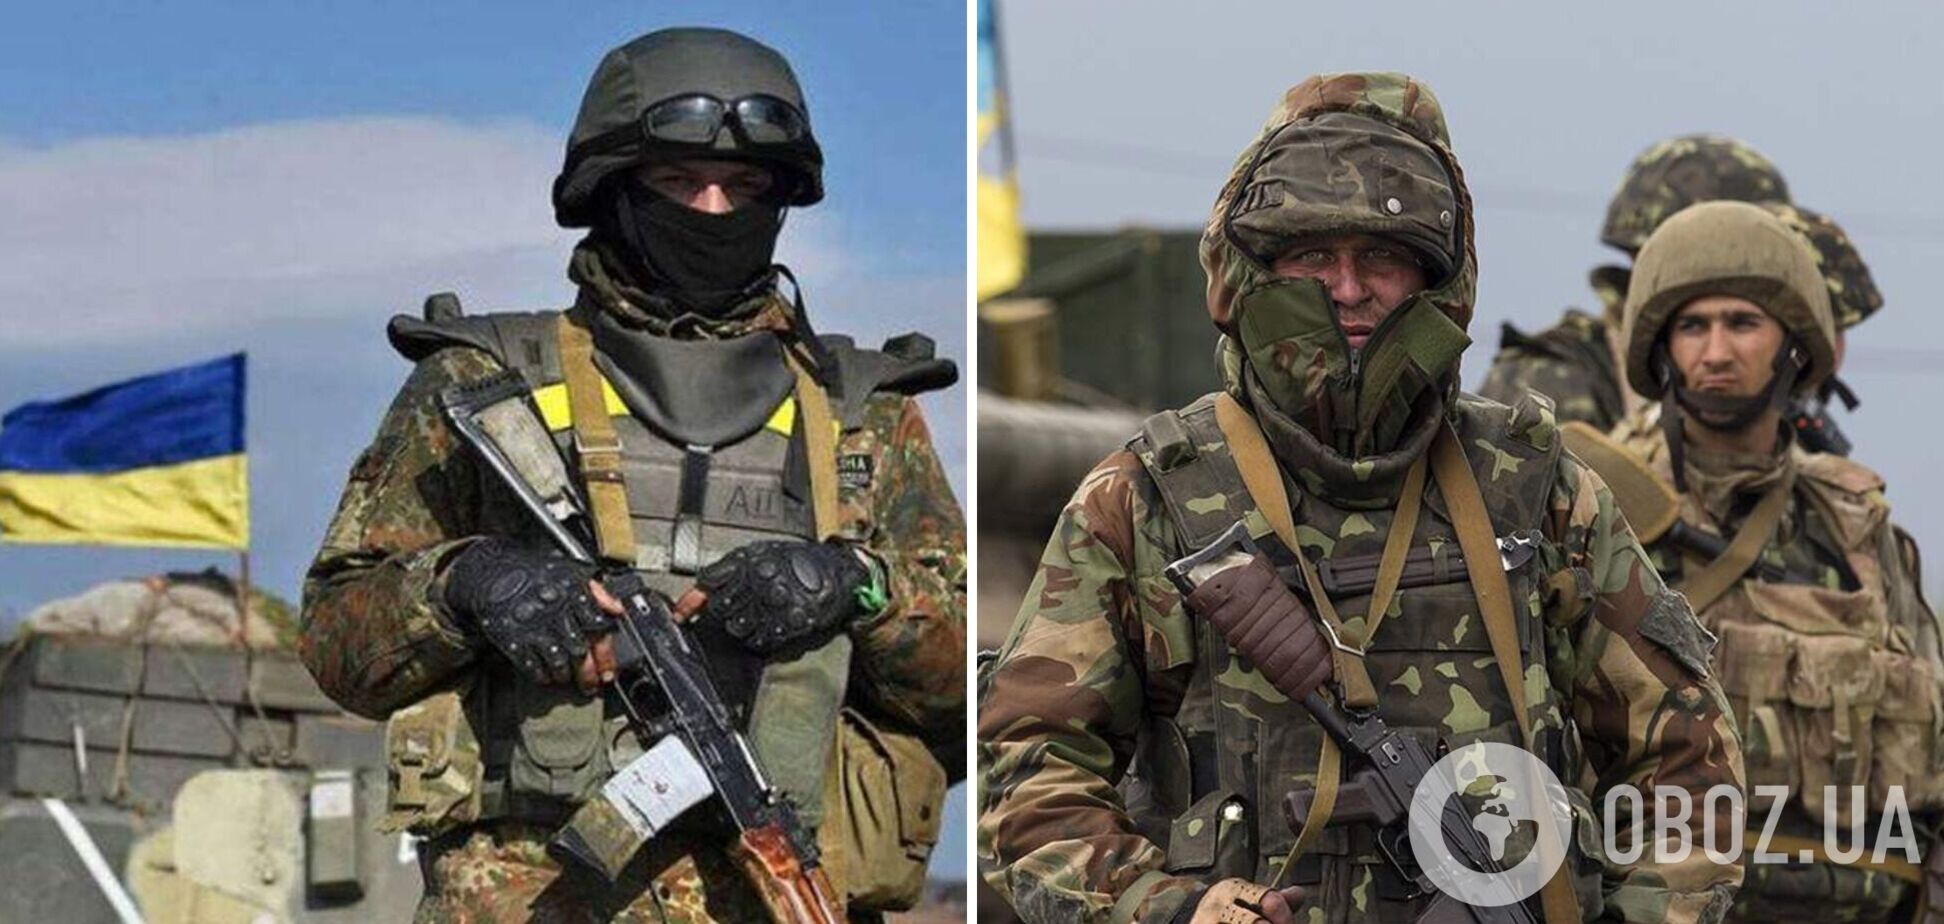 ВСУ мощно обратились к украинцам с фронта: враг несет большие потери. Видео